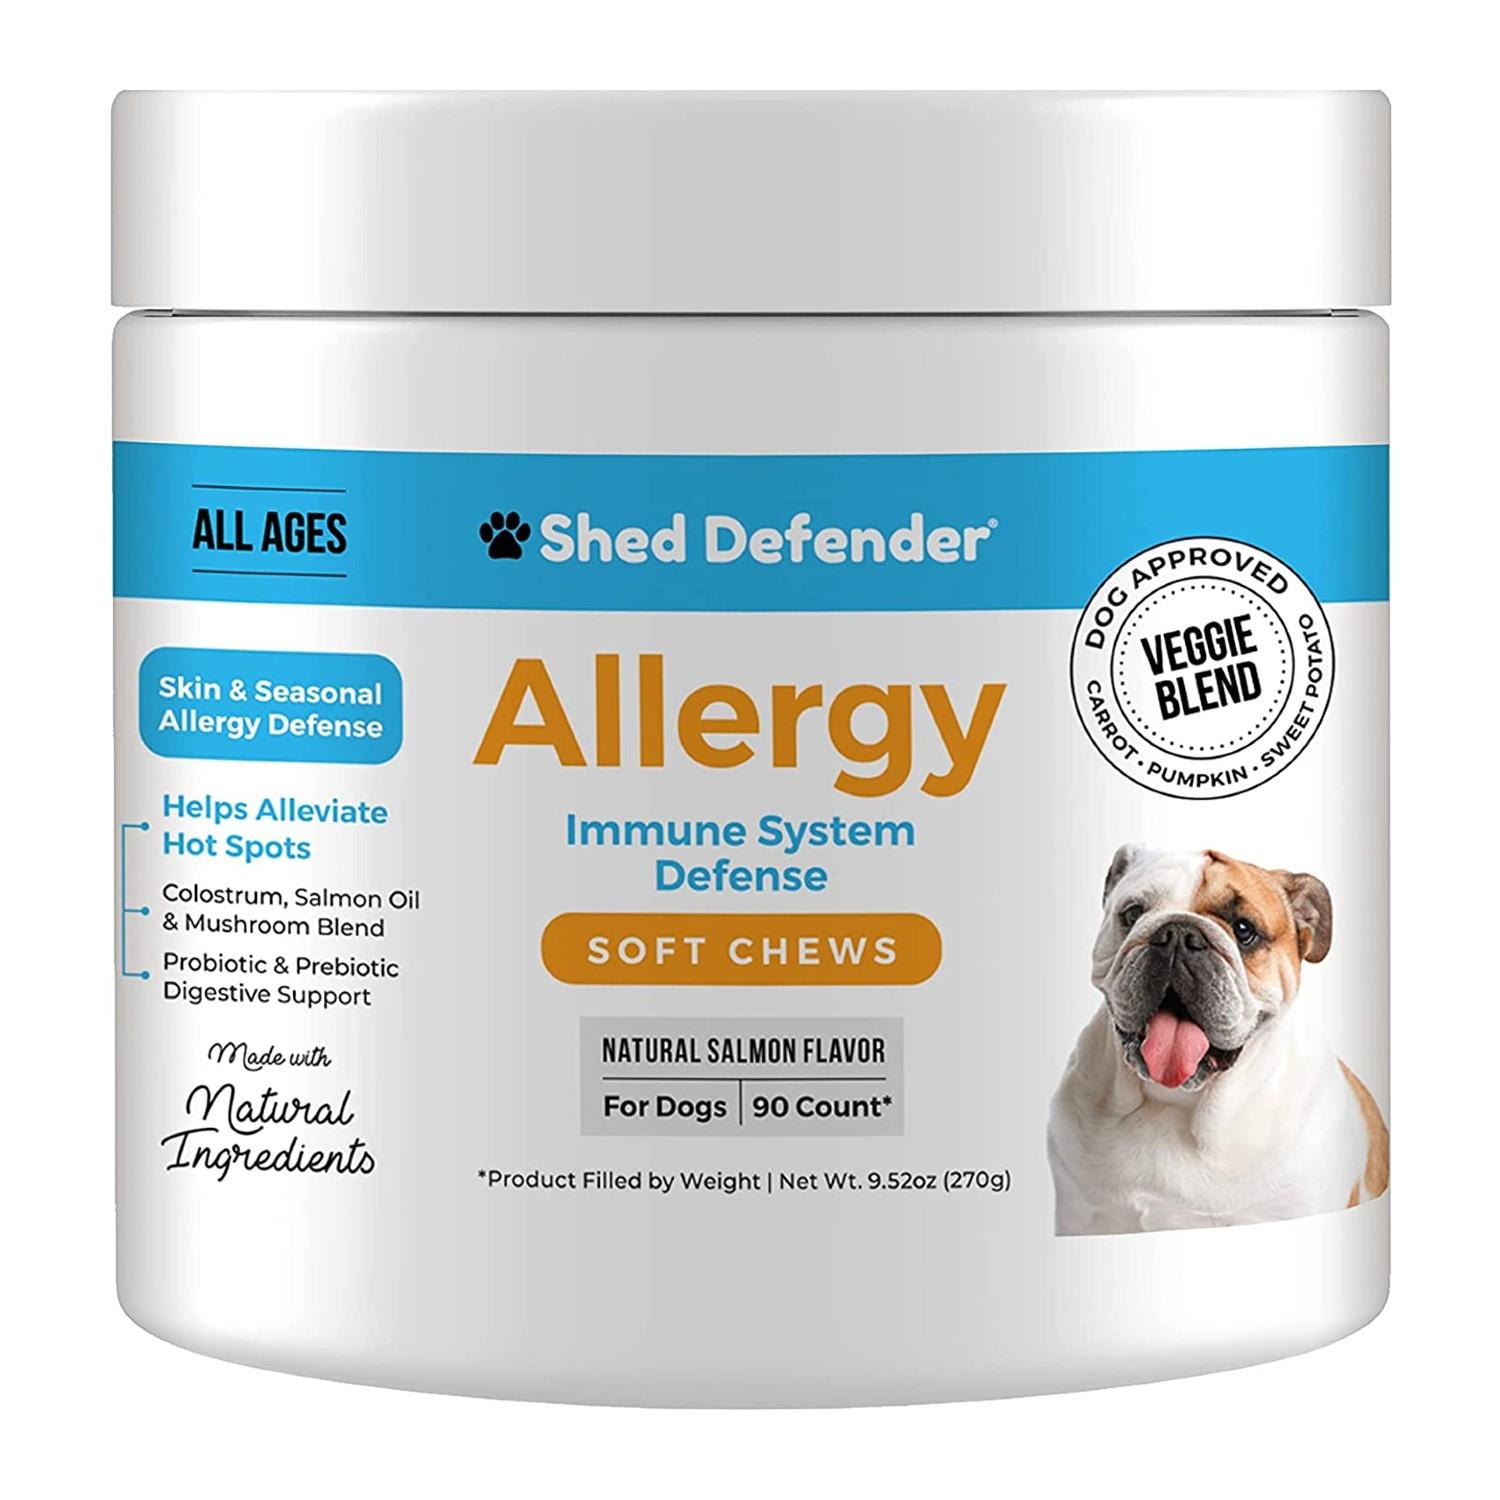 Shed Defender Dog Soft Chews - Allergy & Immune System Defense